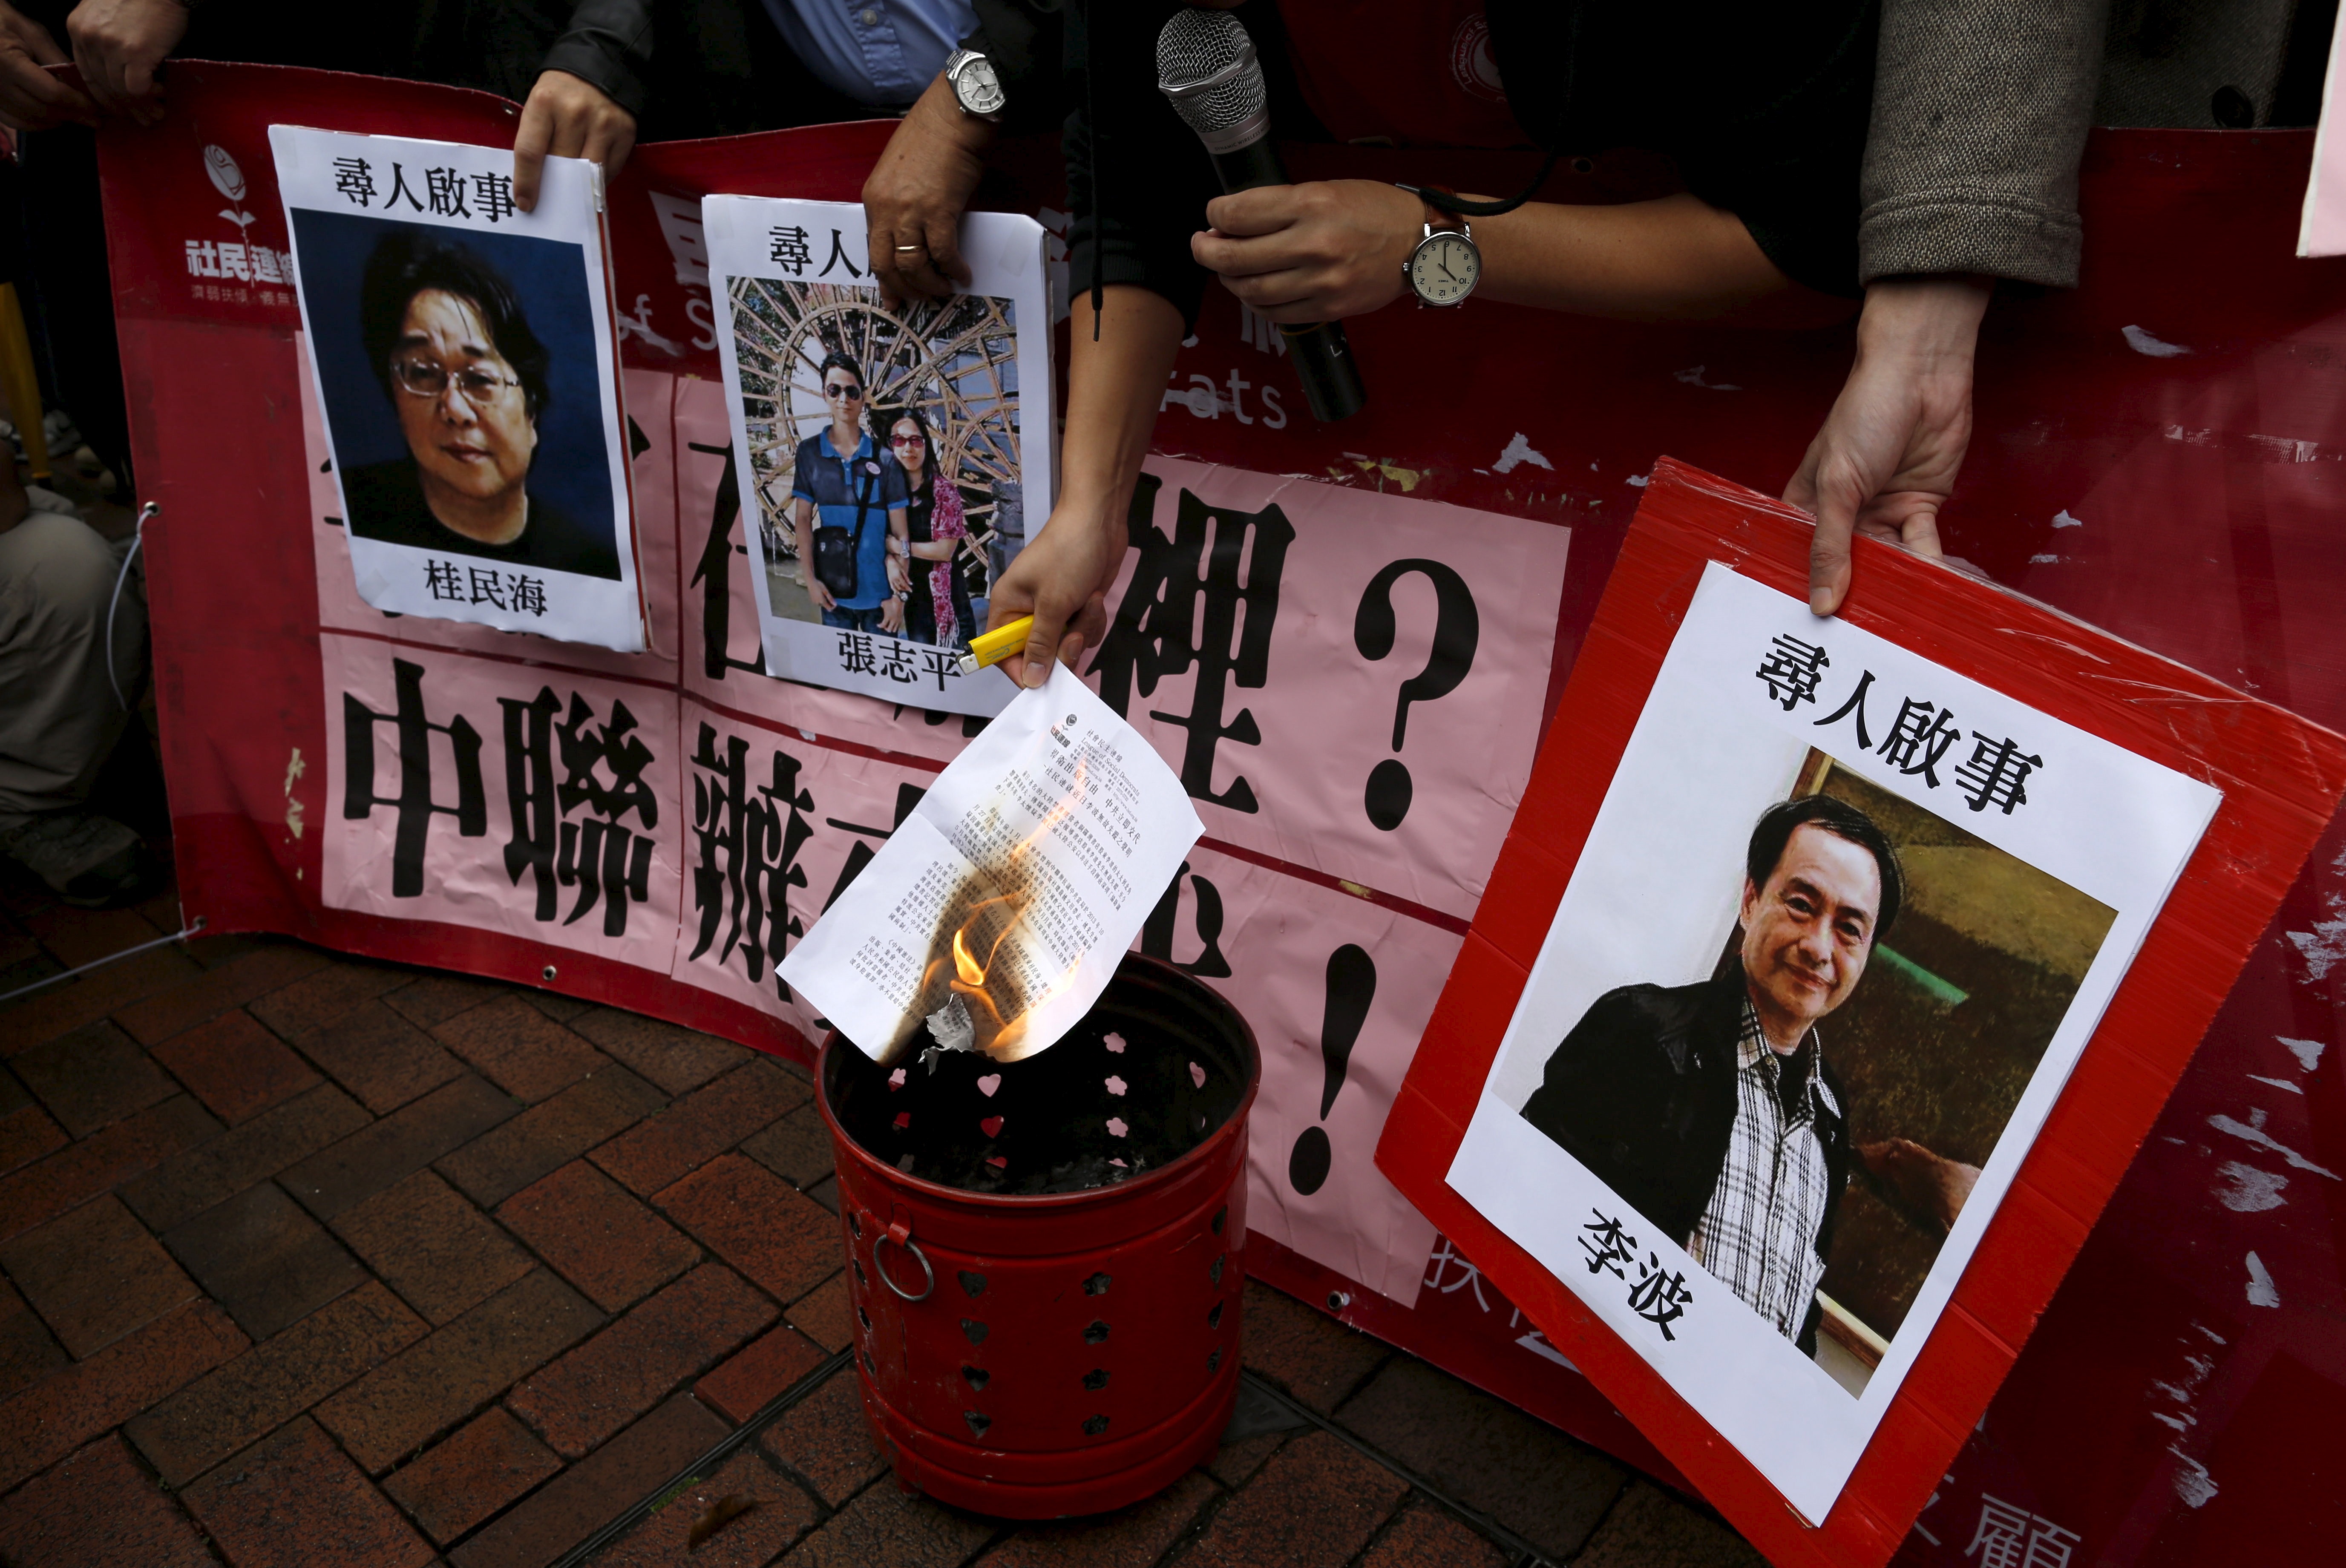 احتجاج في هونج كونغ بسبب اختفاء أحد بائعي الكتب المتخصصين في المنشورات التي تنتقد حكومة الحزب الشيوعي (رويترز)